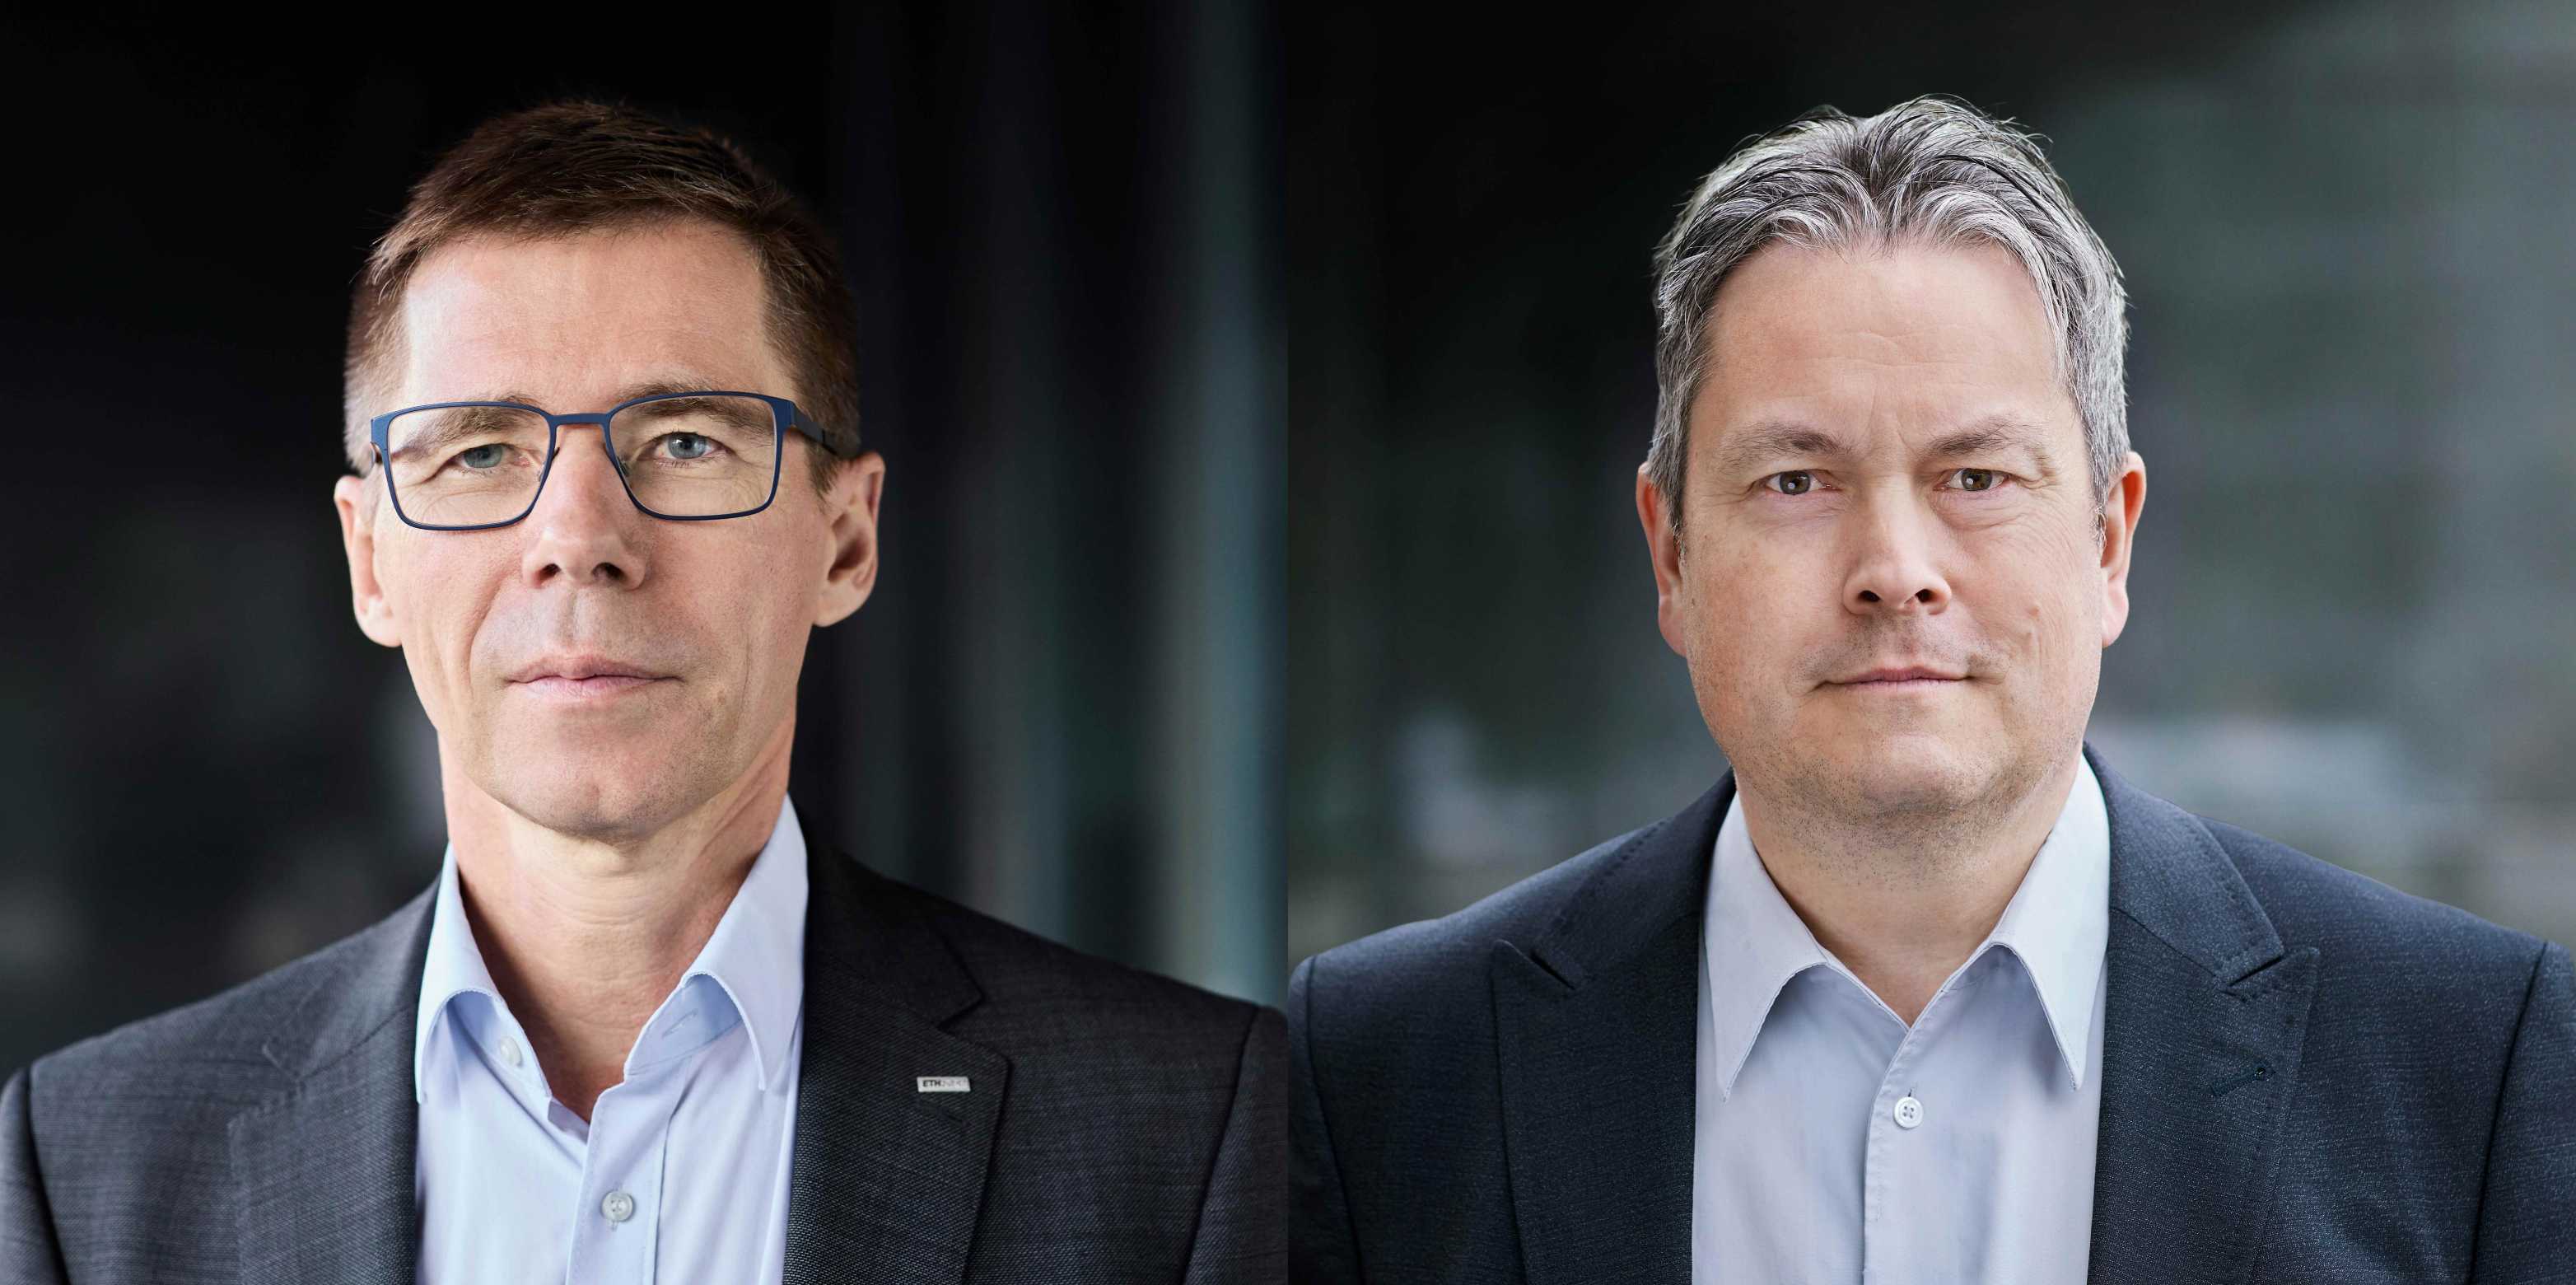 Portraits von ETH-Präsident Joël Mesot und Stefan Spiegel, Vizepräsident für Finanzen und Controlling